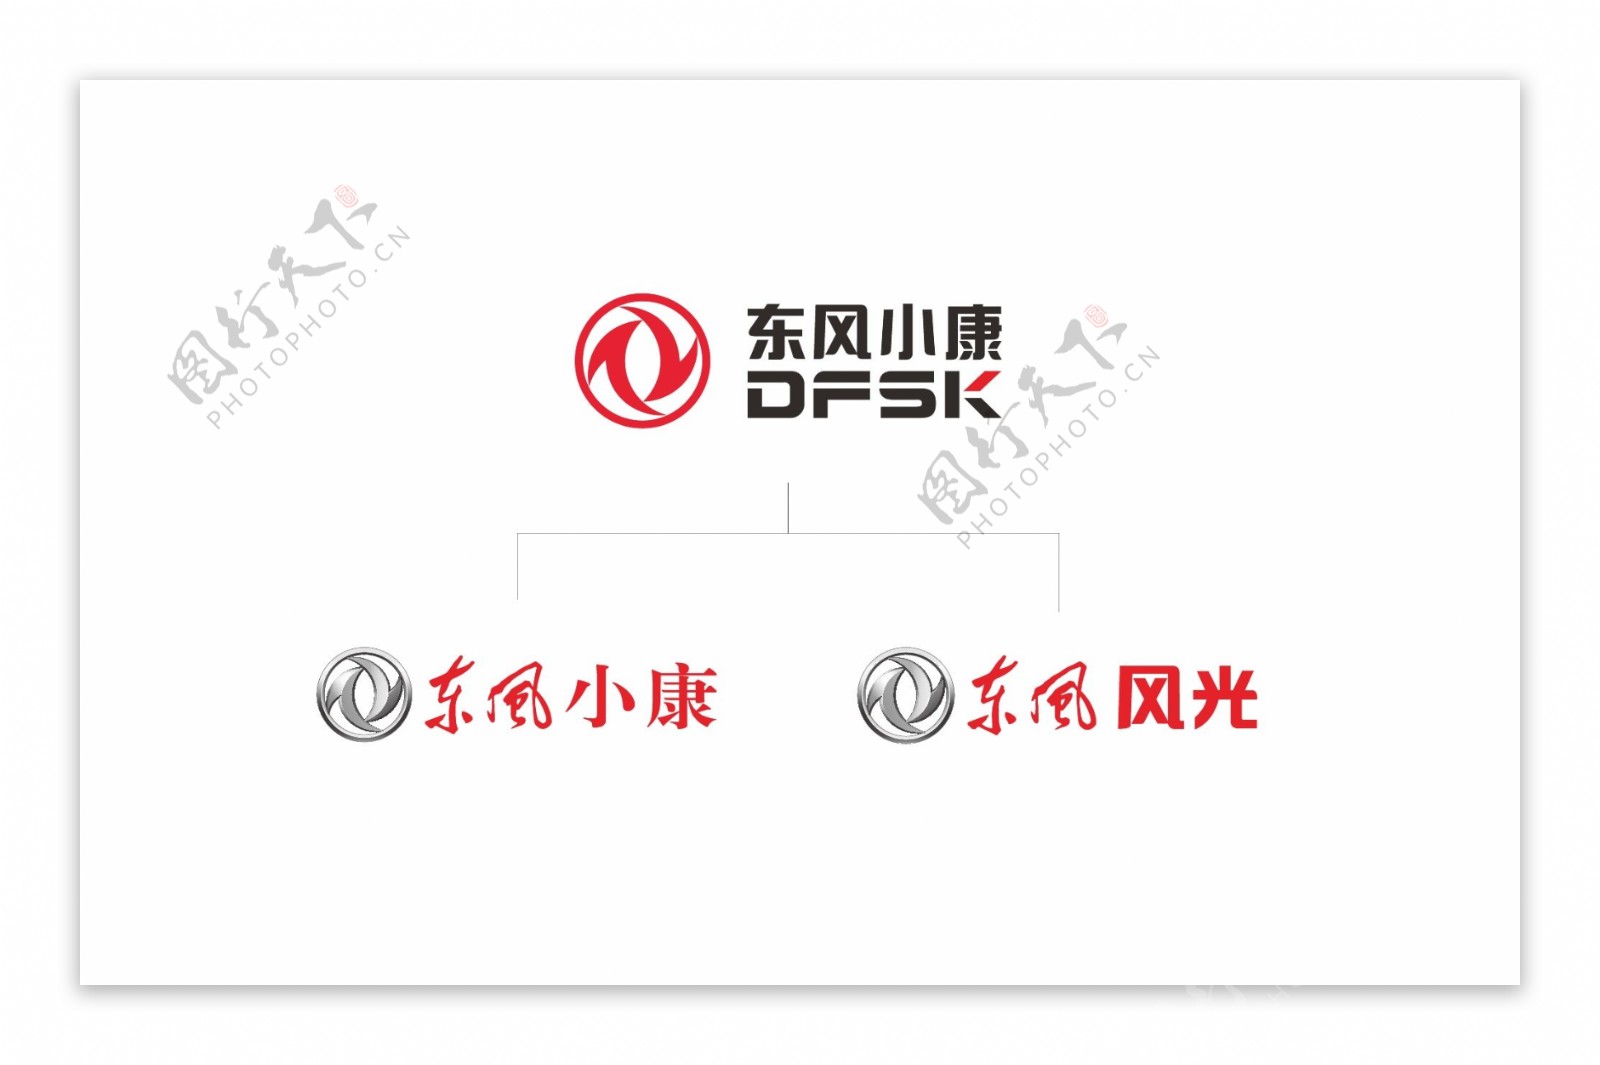 东风小康品牌logo